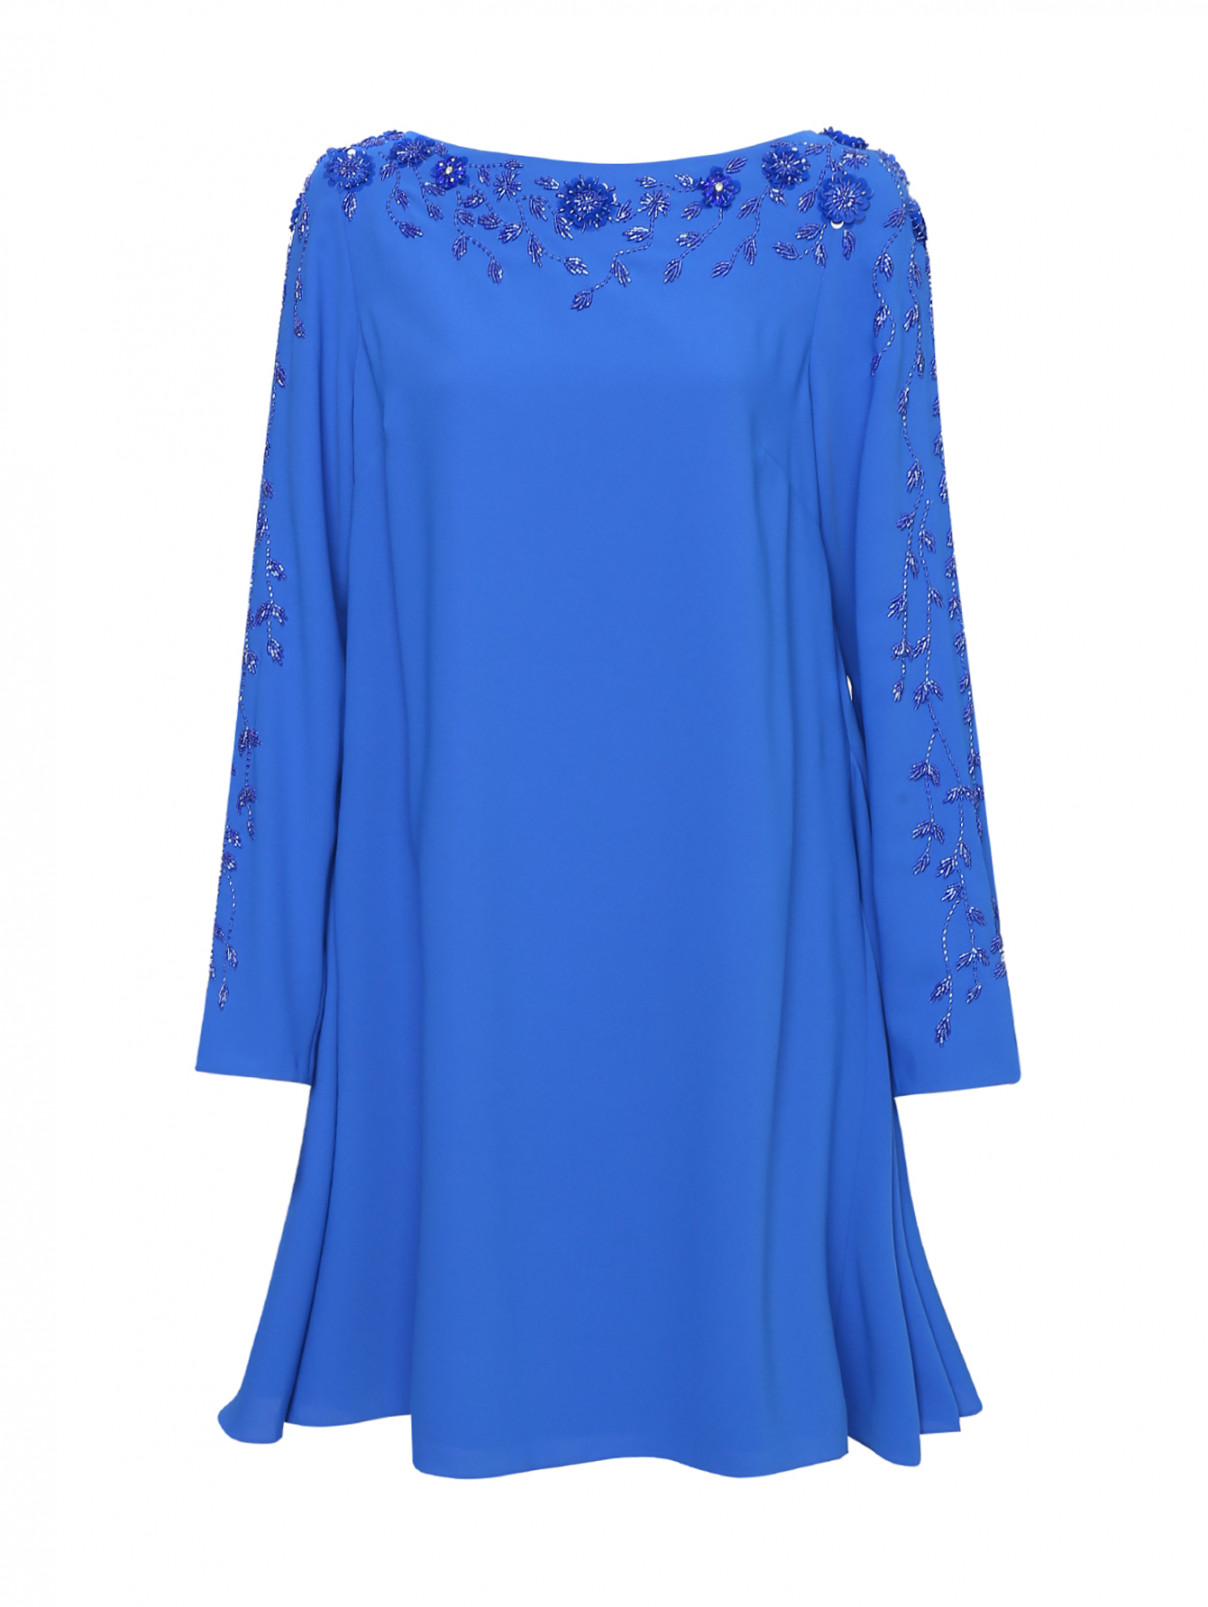 Платье из вискозы с вышивкой бисером Daniela de Souza  –  Общий вид  – Цвет:  Синий